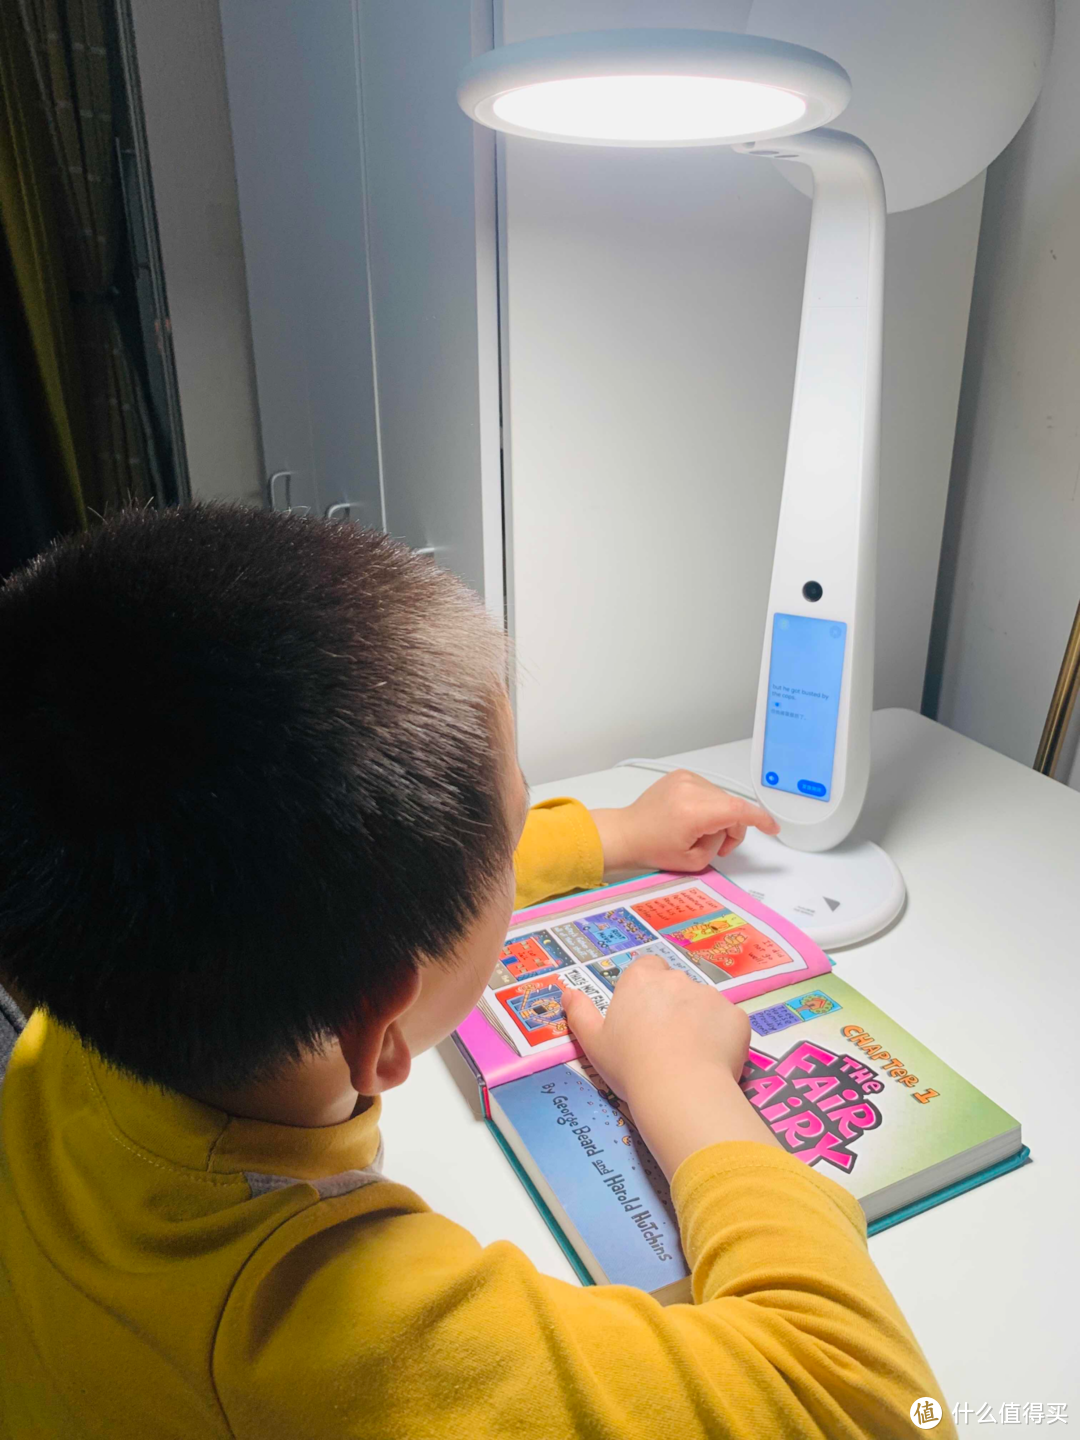 帮助孩子培养学习习惯的书桌AI助手：有道智能学习灯